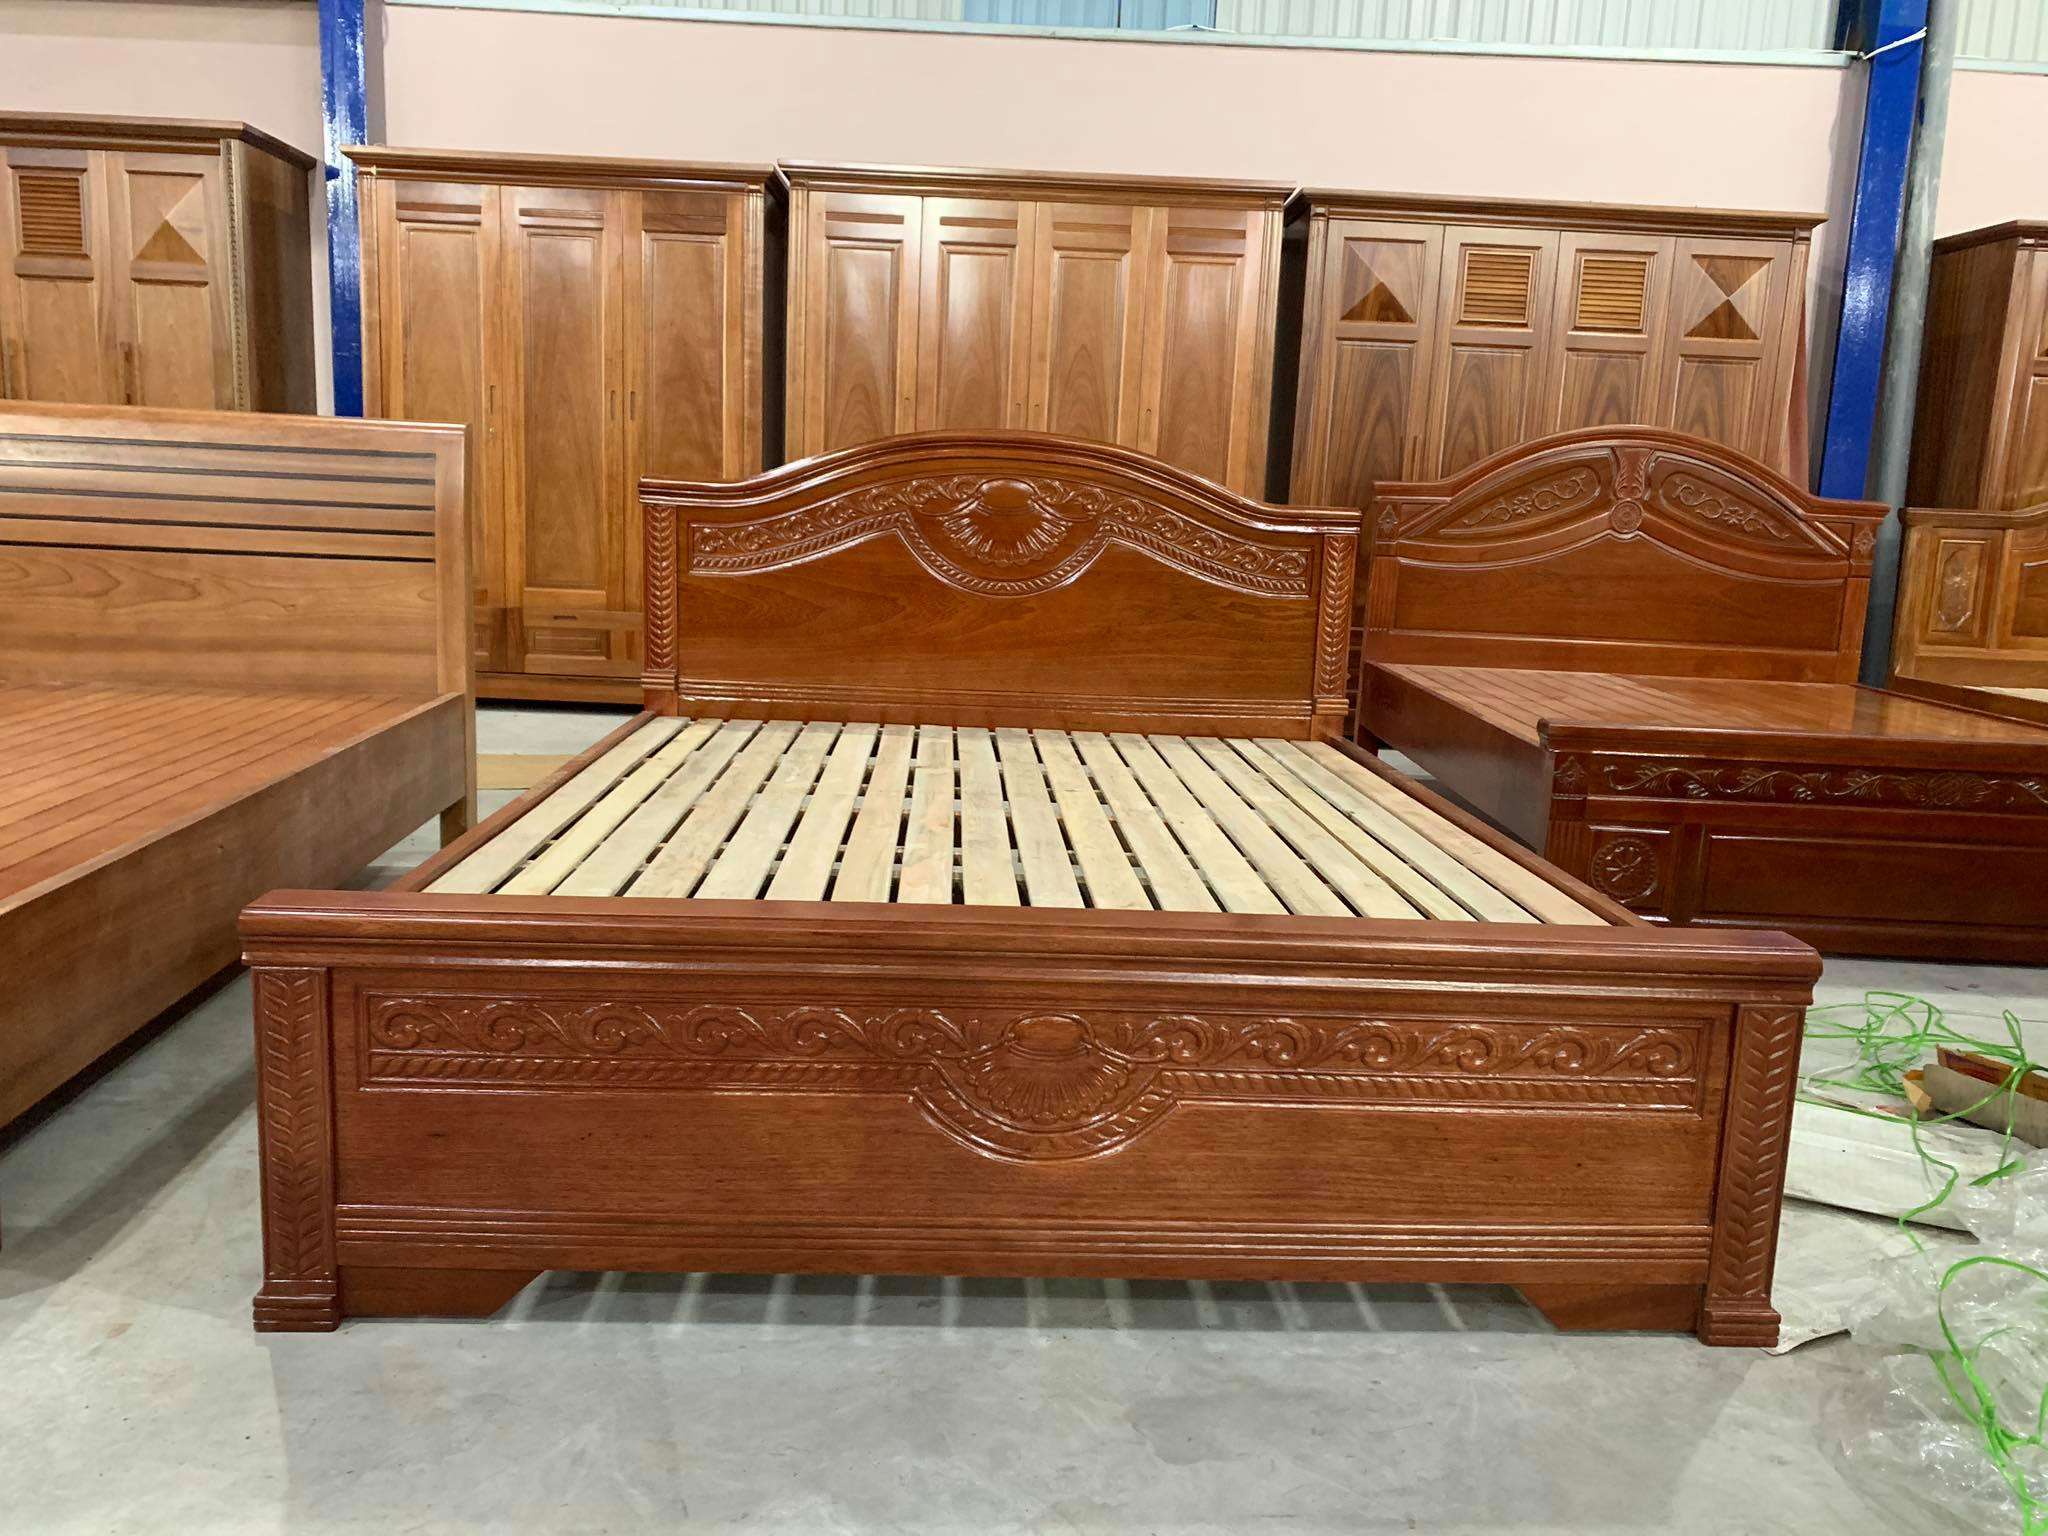 Giường ngủ bằng gỗ hương nổi tiếng với độ bền cao và hiện đại